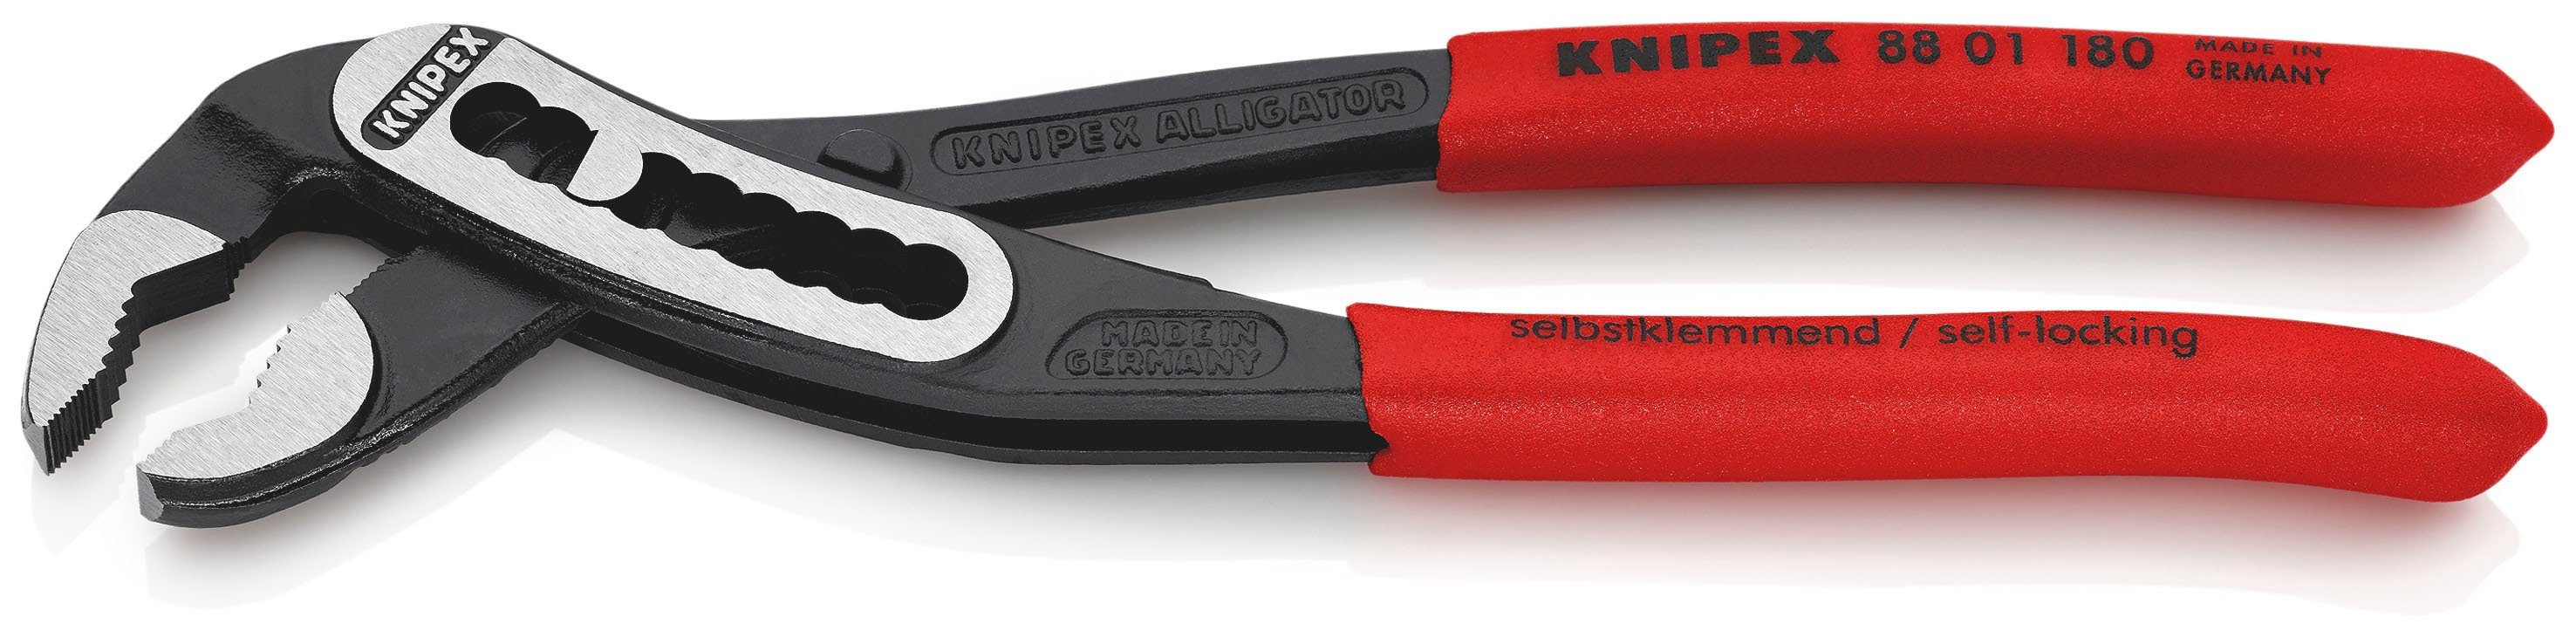 Knipex Wasserpumpenzange 88 01 Kunststoff 180 Alligator®, 180 schwarz atramentiert, rutschhemmendem mit mm überzogen 1-tlg